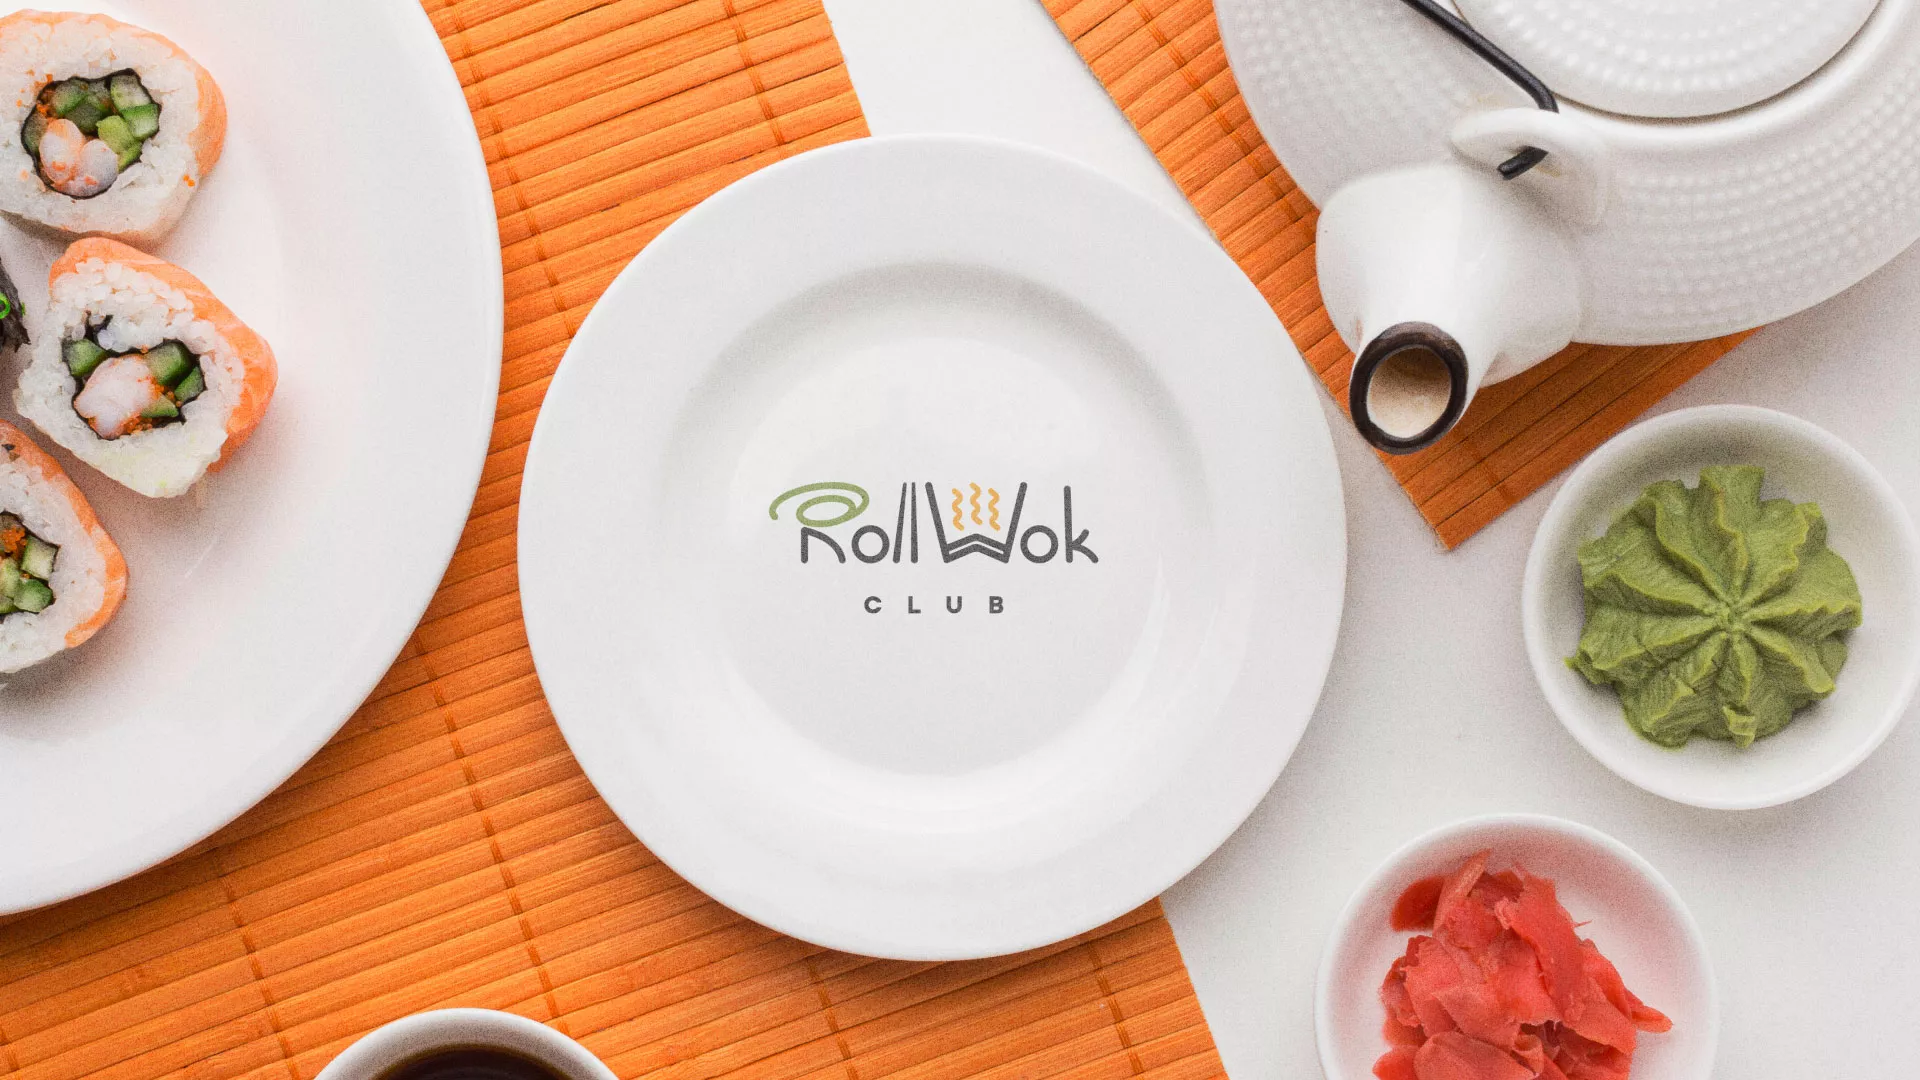 Разработка логотипа и фирменного стиля суши-бара «Roll Wok Club» в Малоархангельске